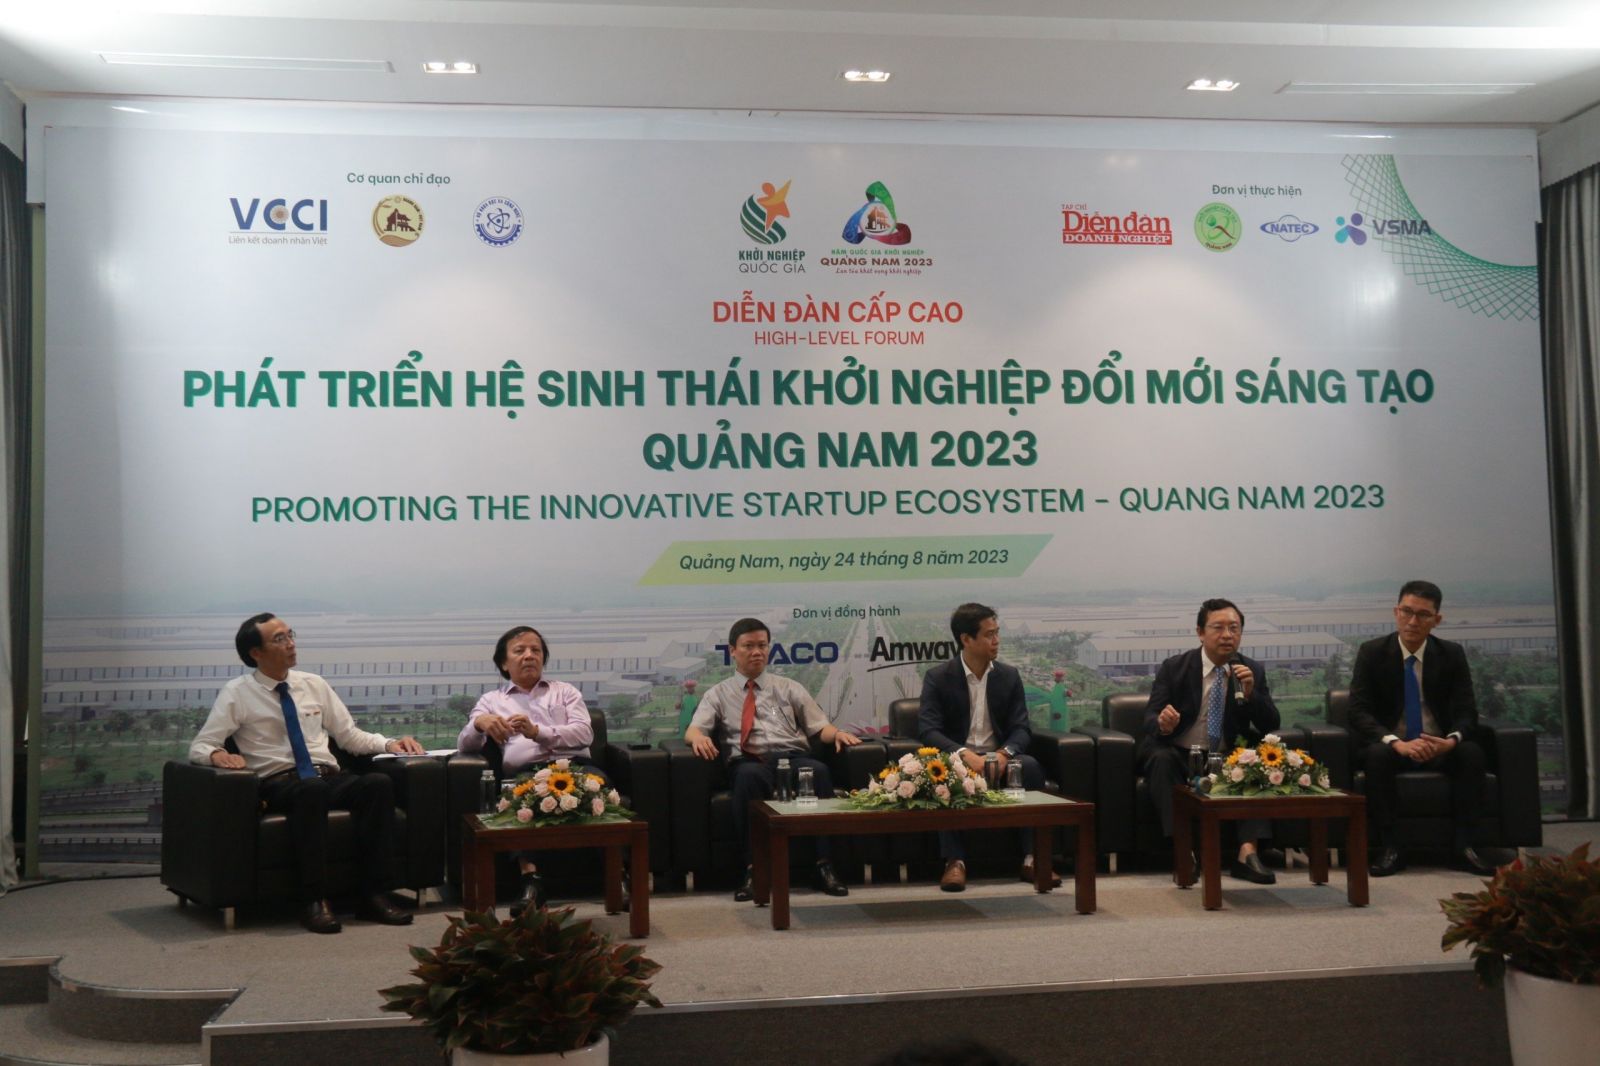 TRỰC TIẾP: Diễn đàn cấp cao Hệ sinh thái Khởi nghiệp đổi mới sáng tạo Quảng Nam 2023